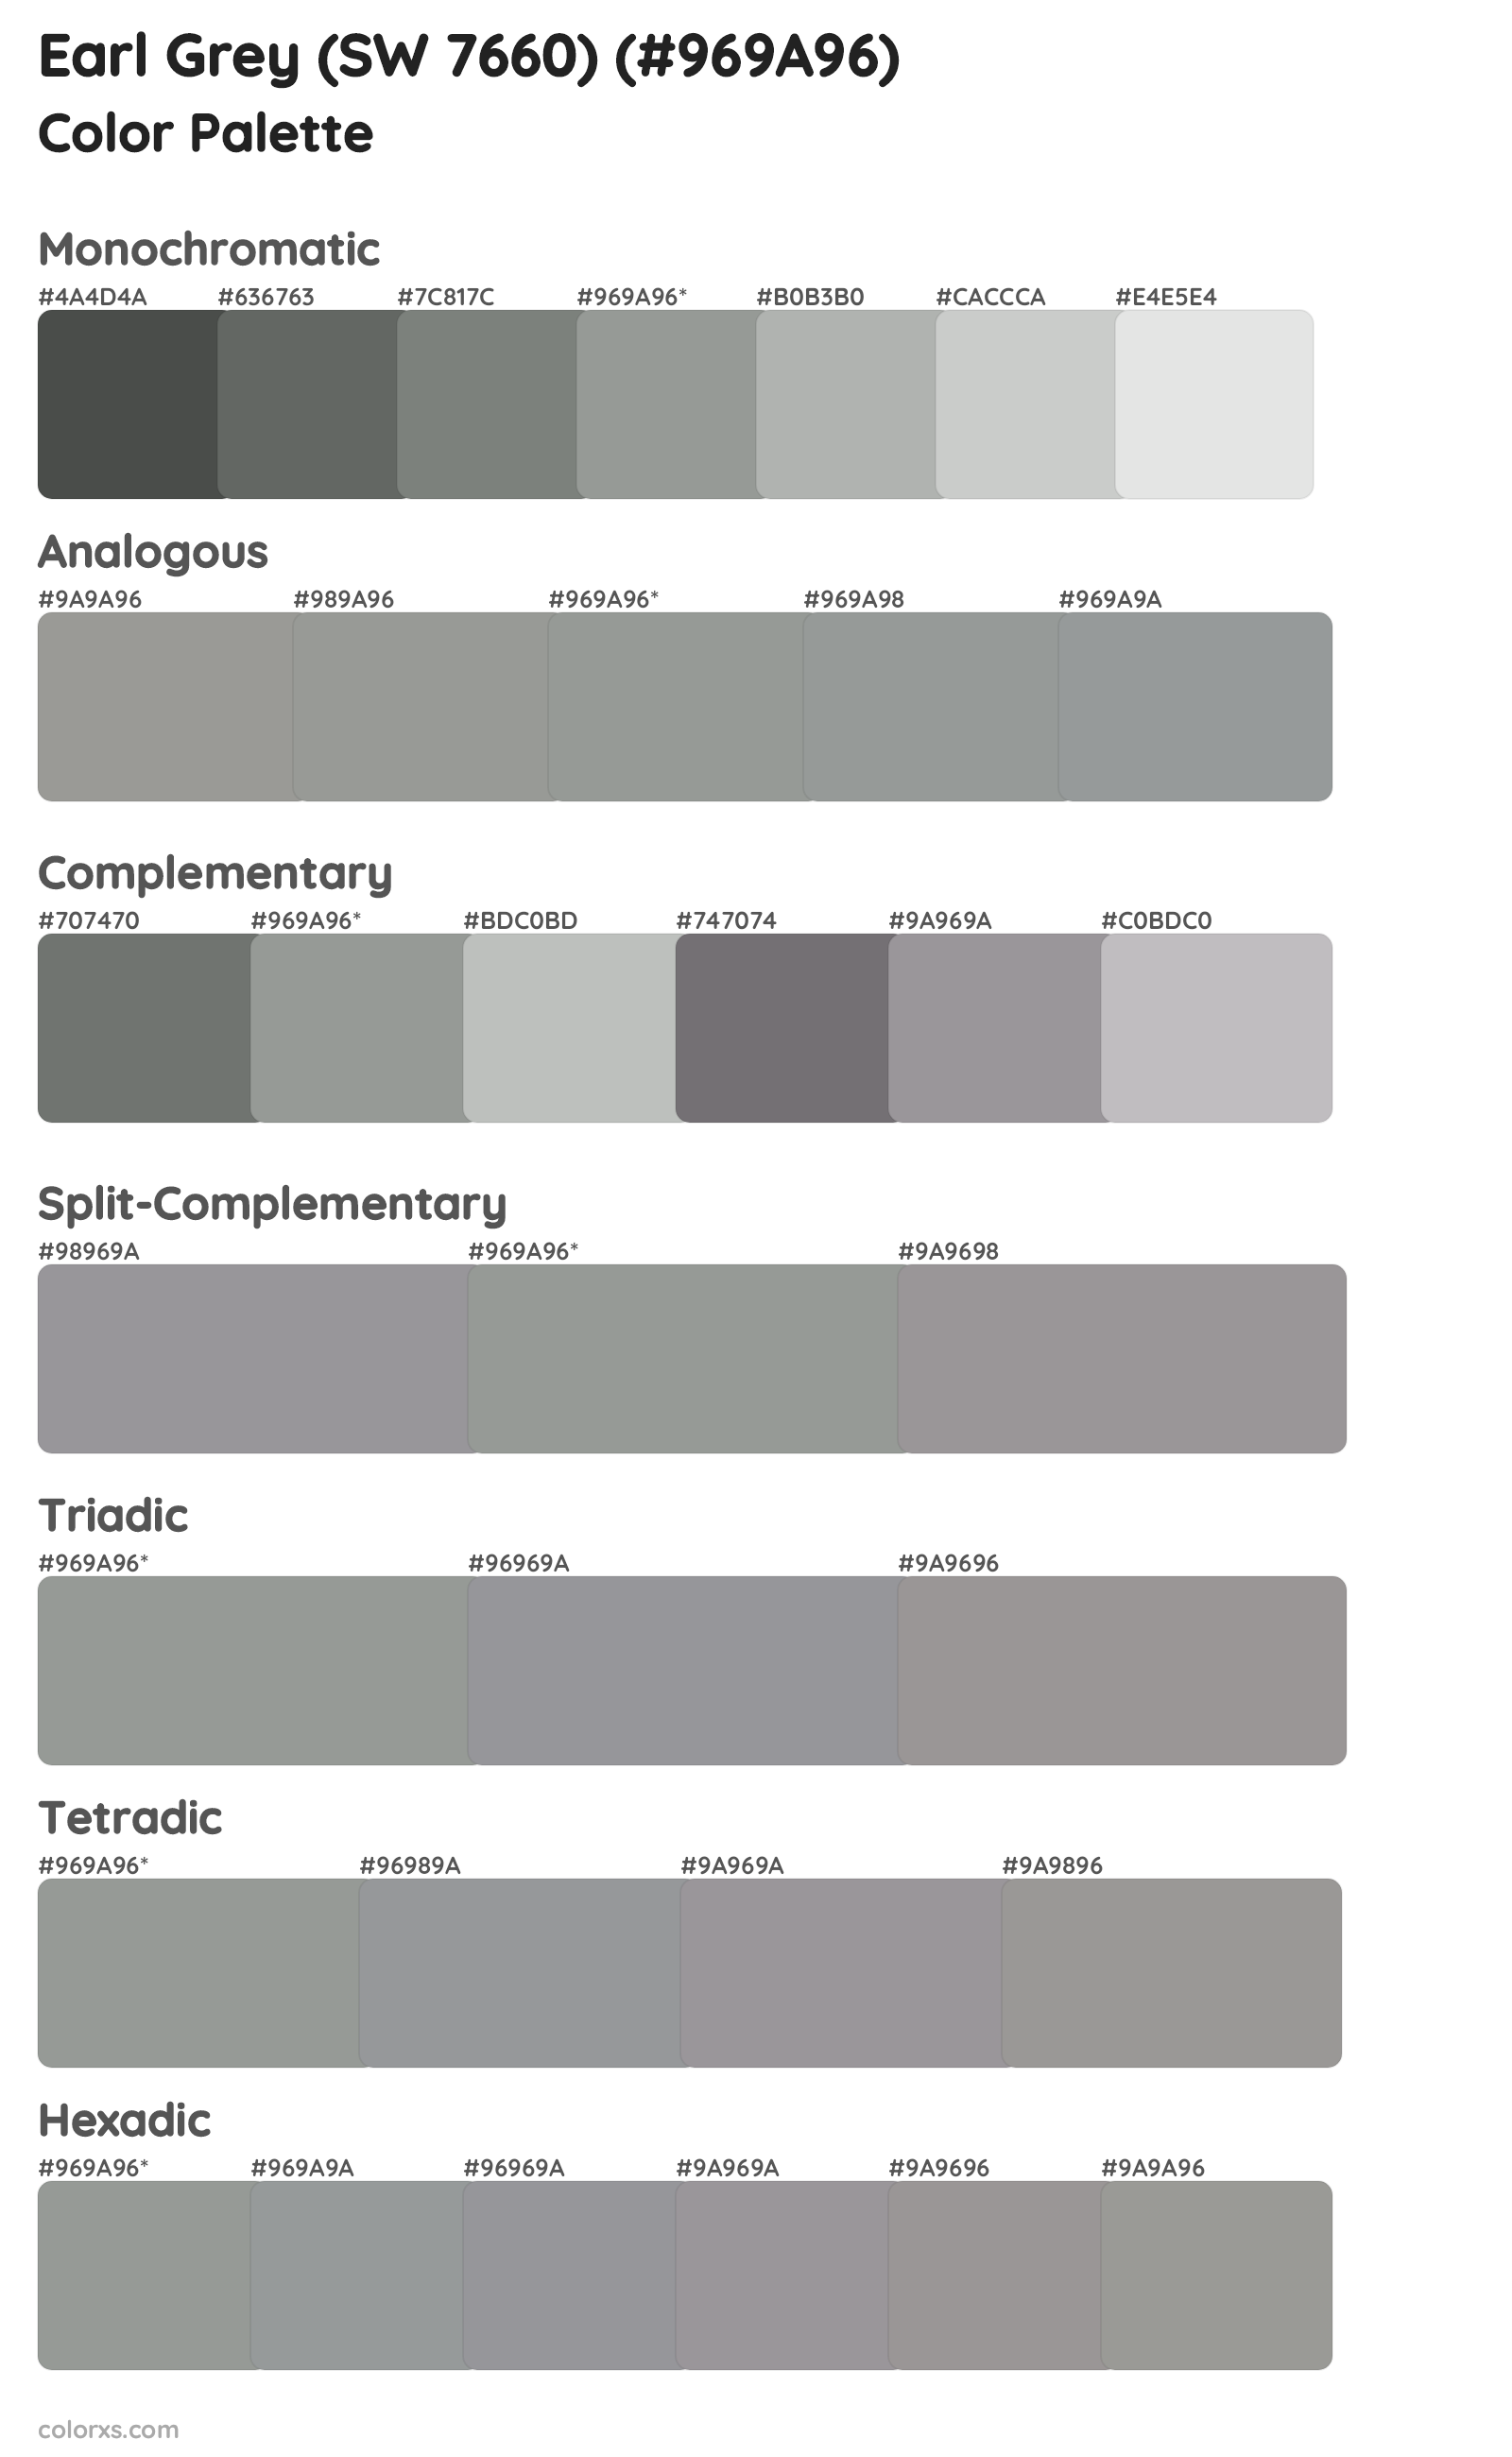 Earl Grey (SW 7660) Color Scheme Palettes